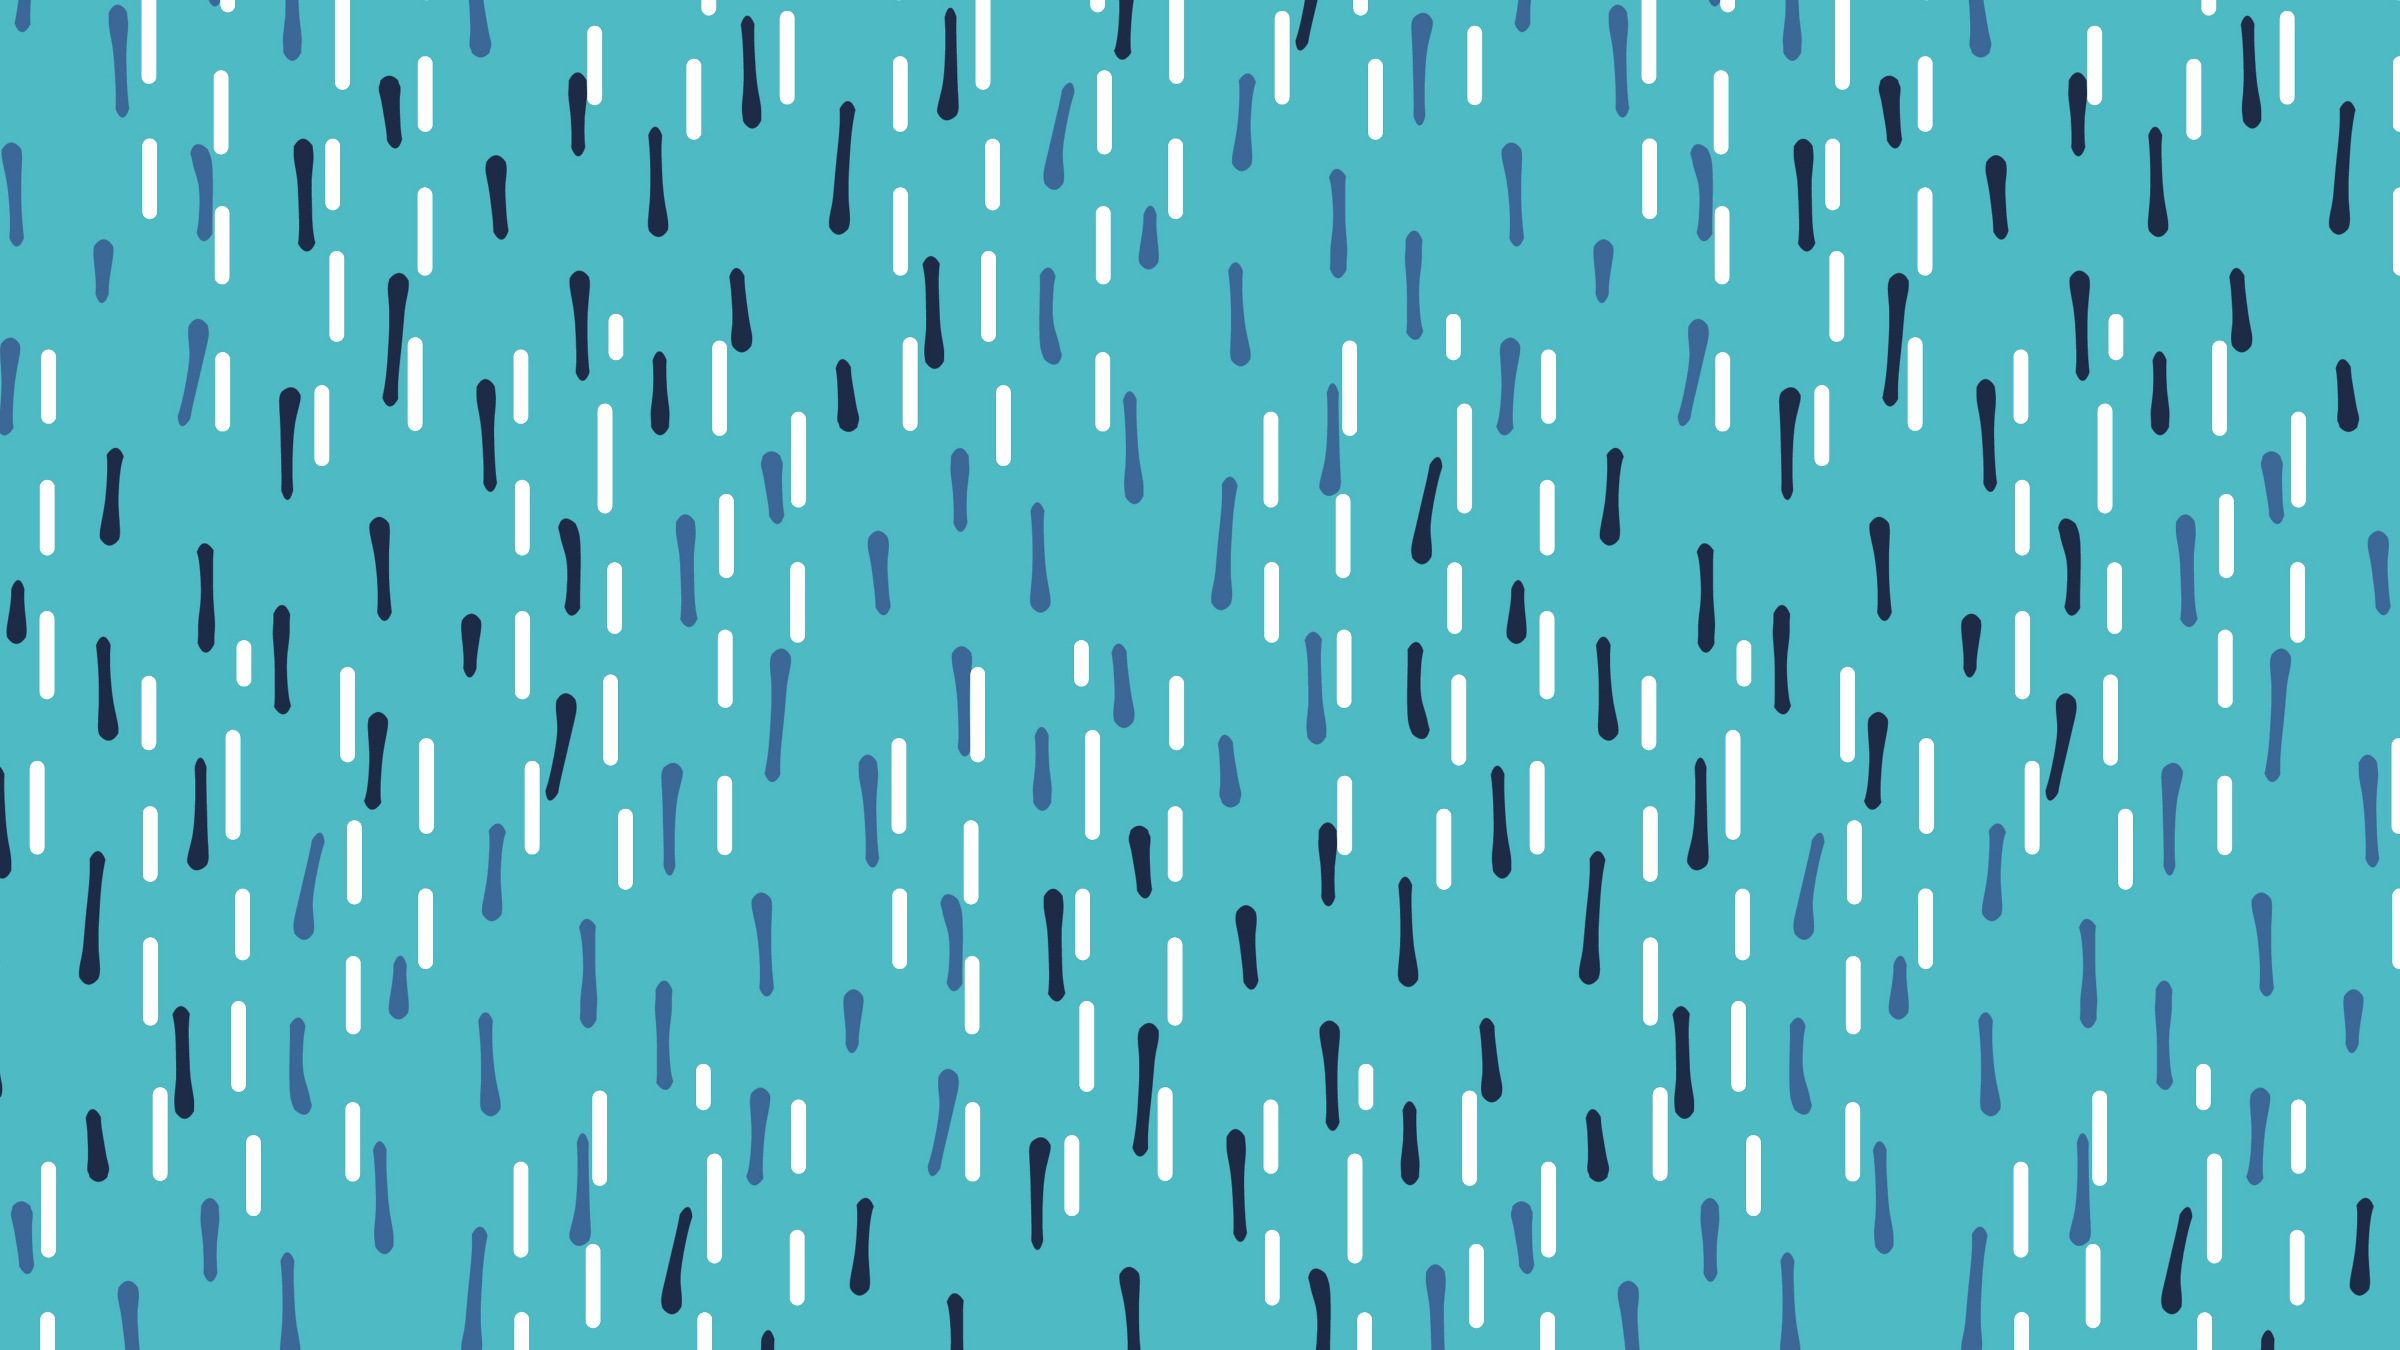 raindrop pattern, illustration